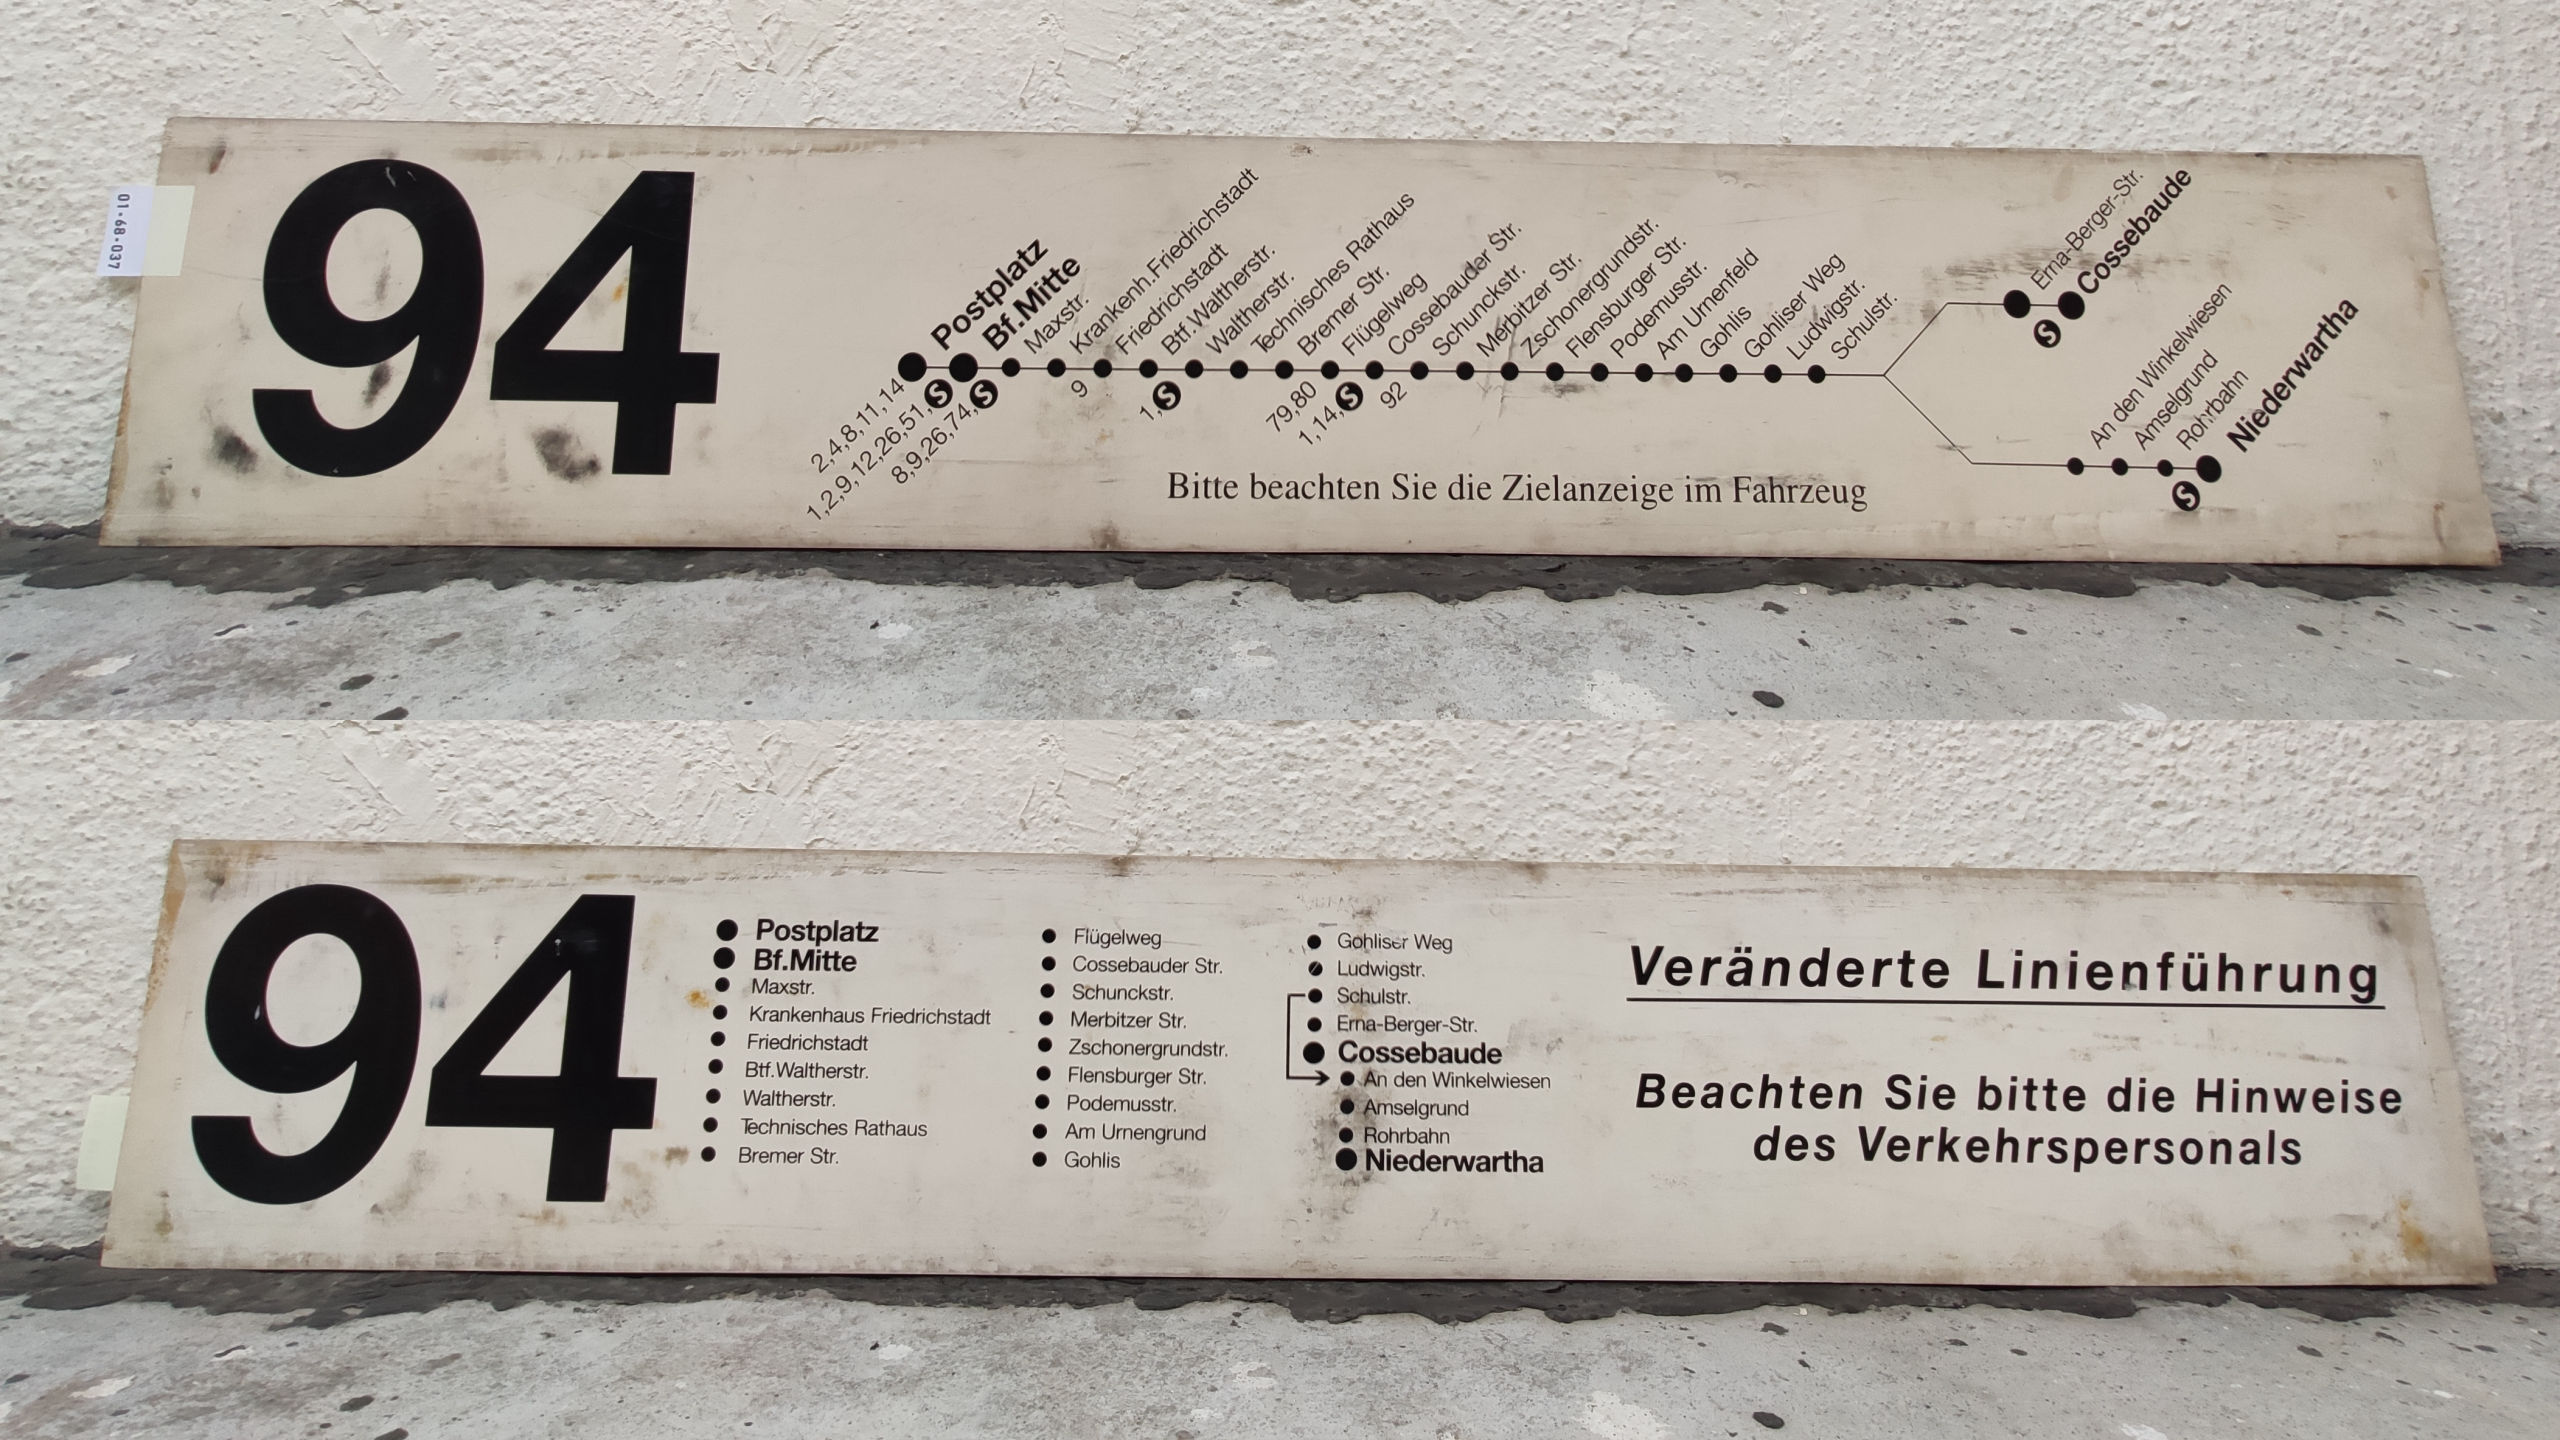 94 Postplatz – Bf.Mitte – Erna-Berger-Str. – Cossebaude [bzw.] Niederwartha